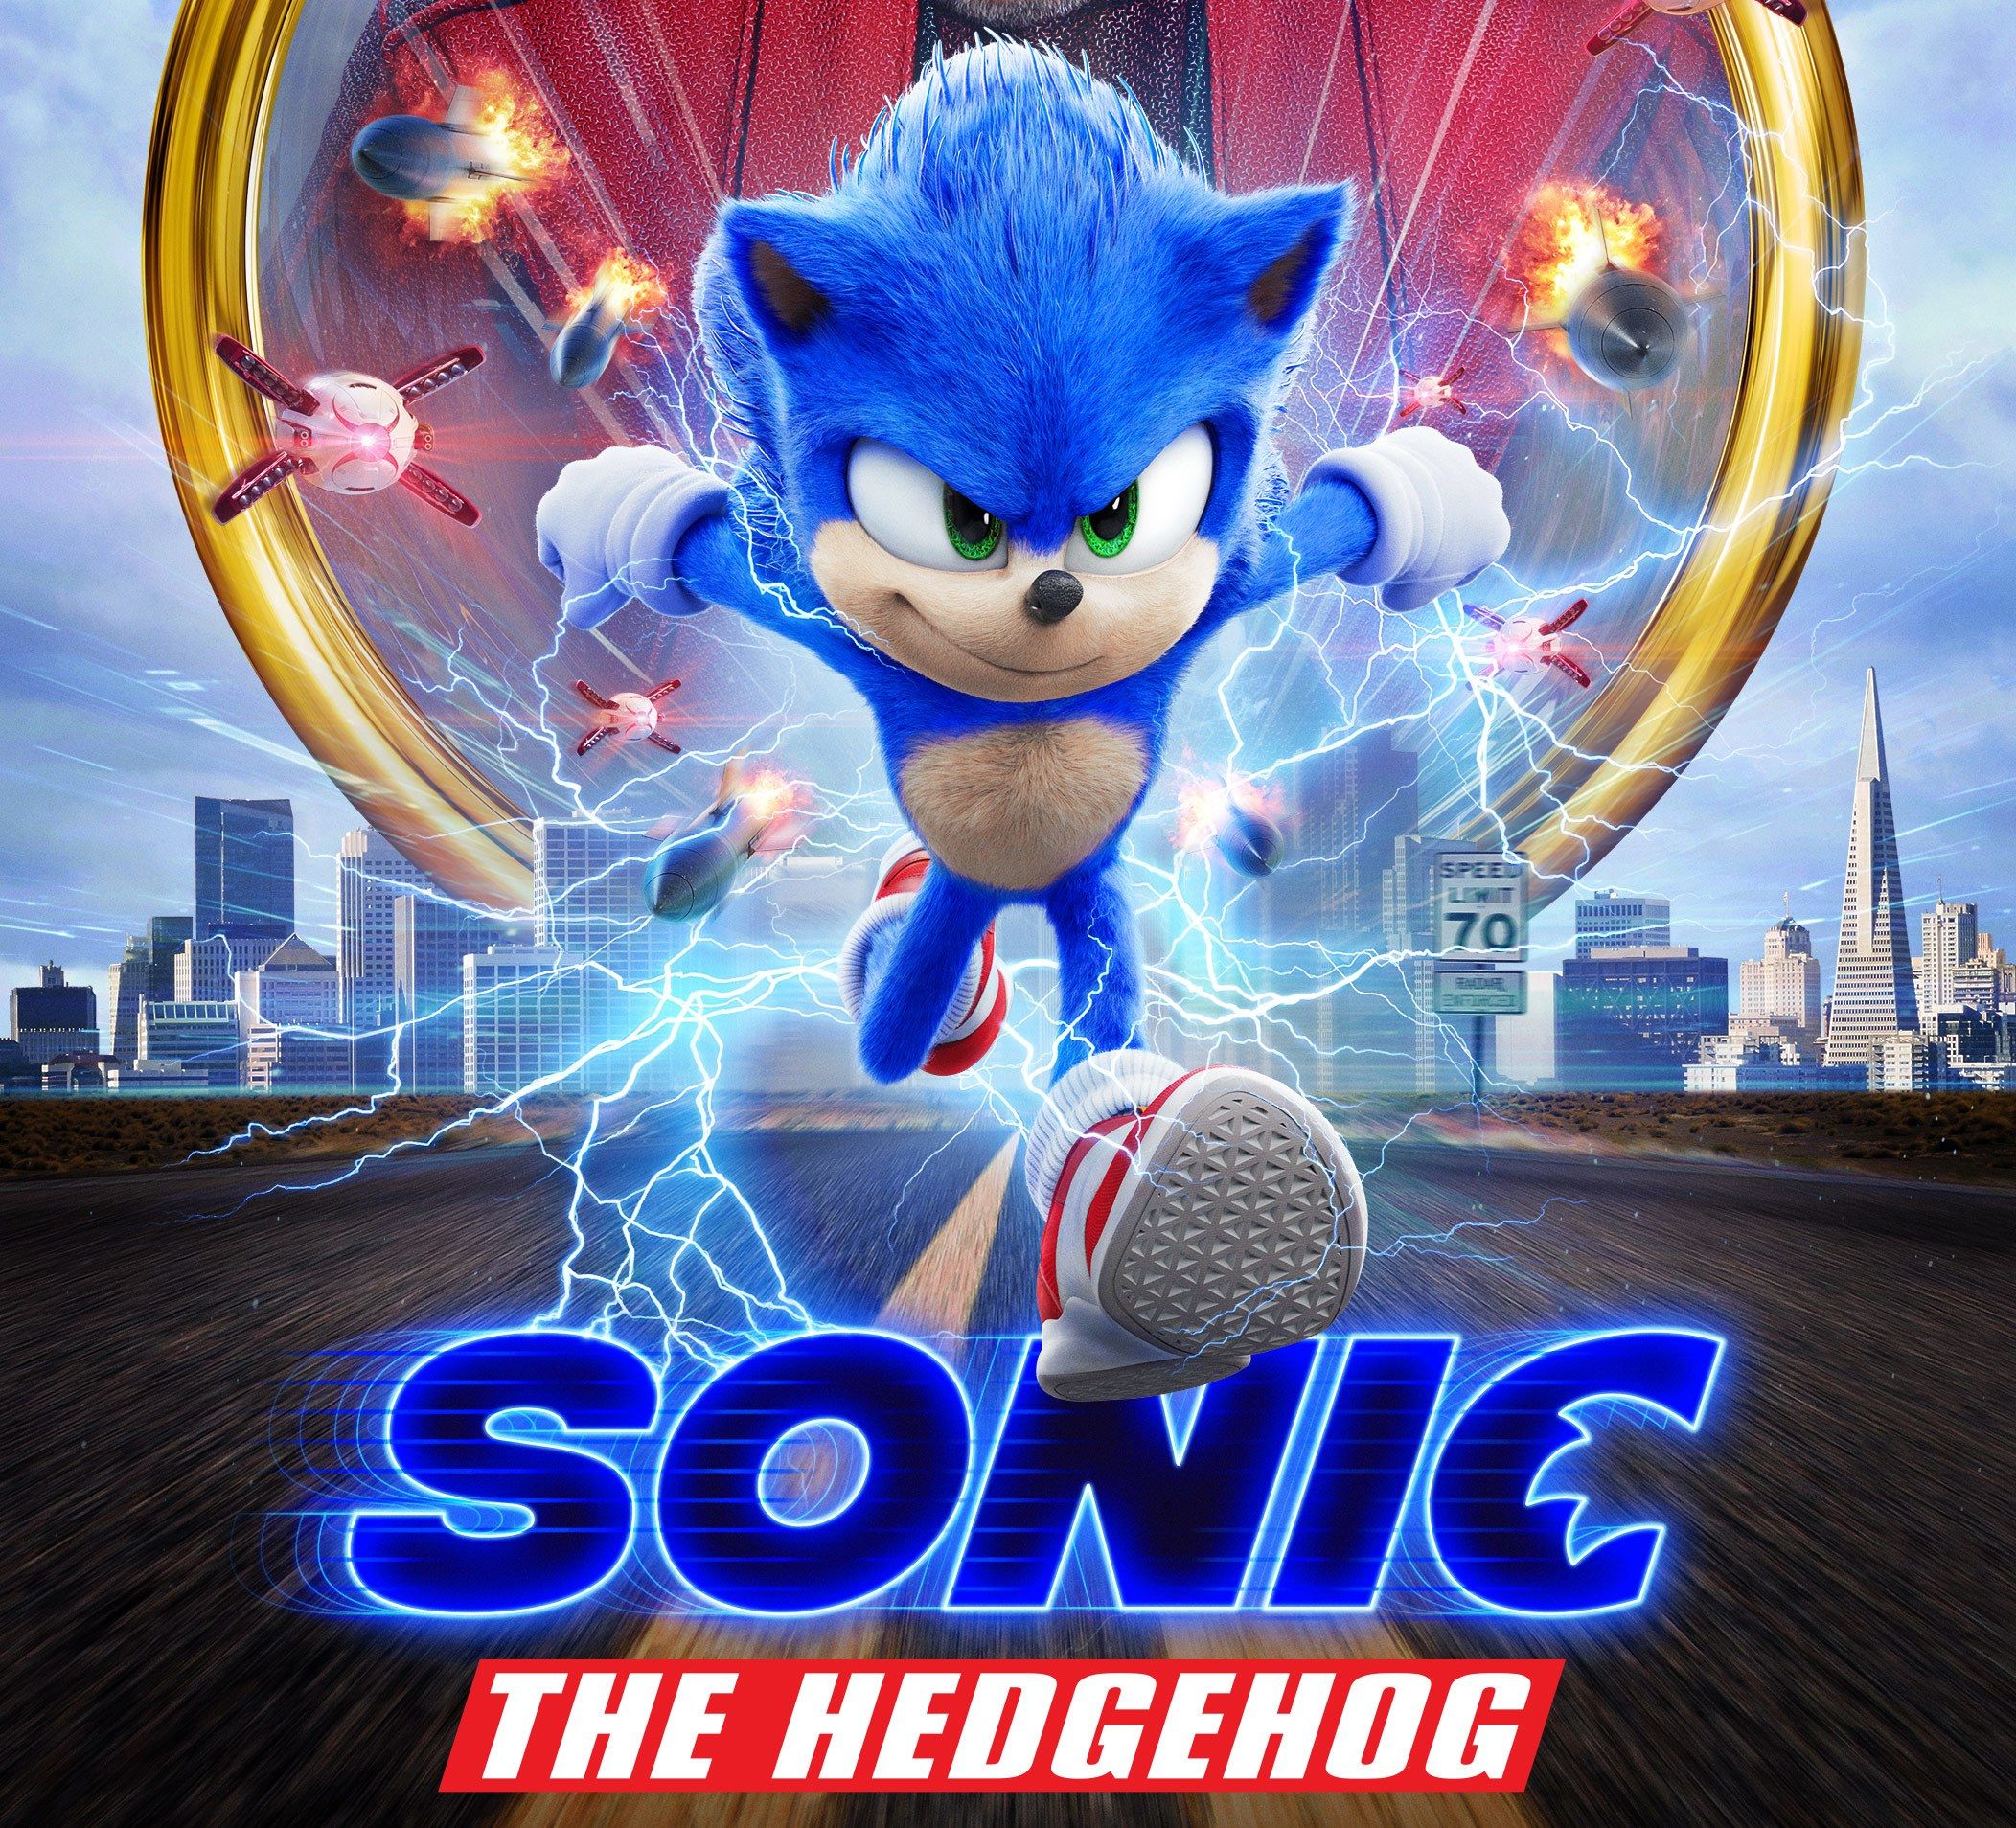 نقد فیلم Sonic The Headhog